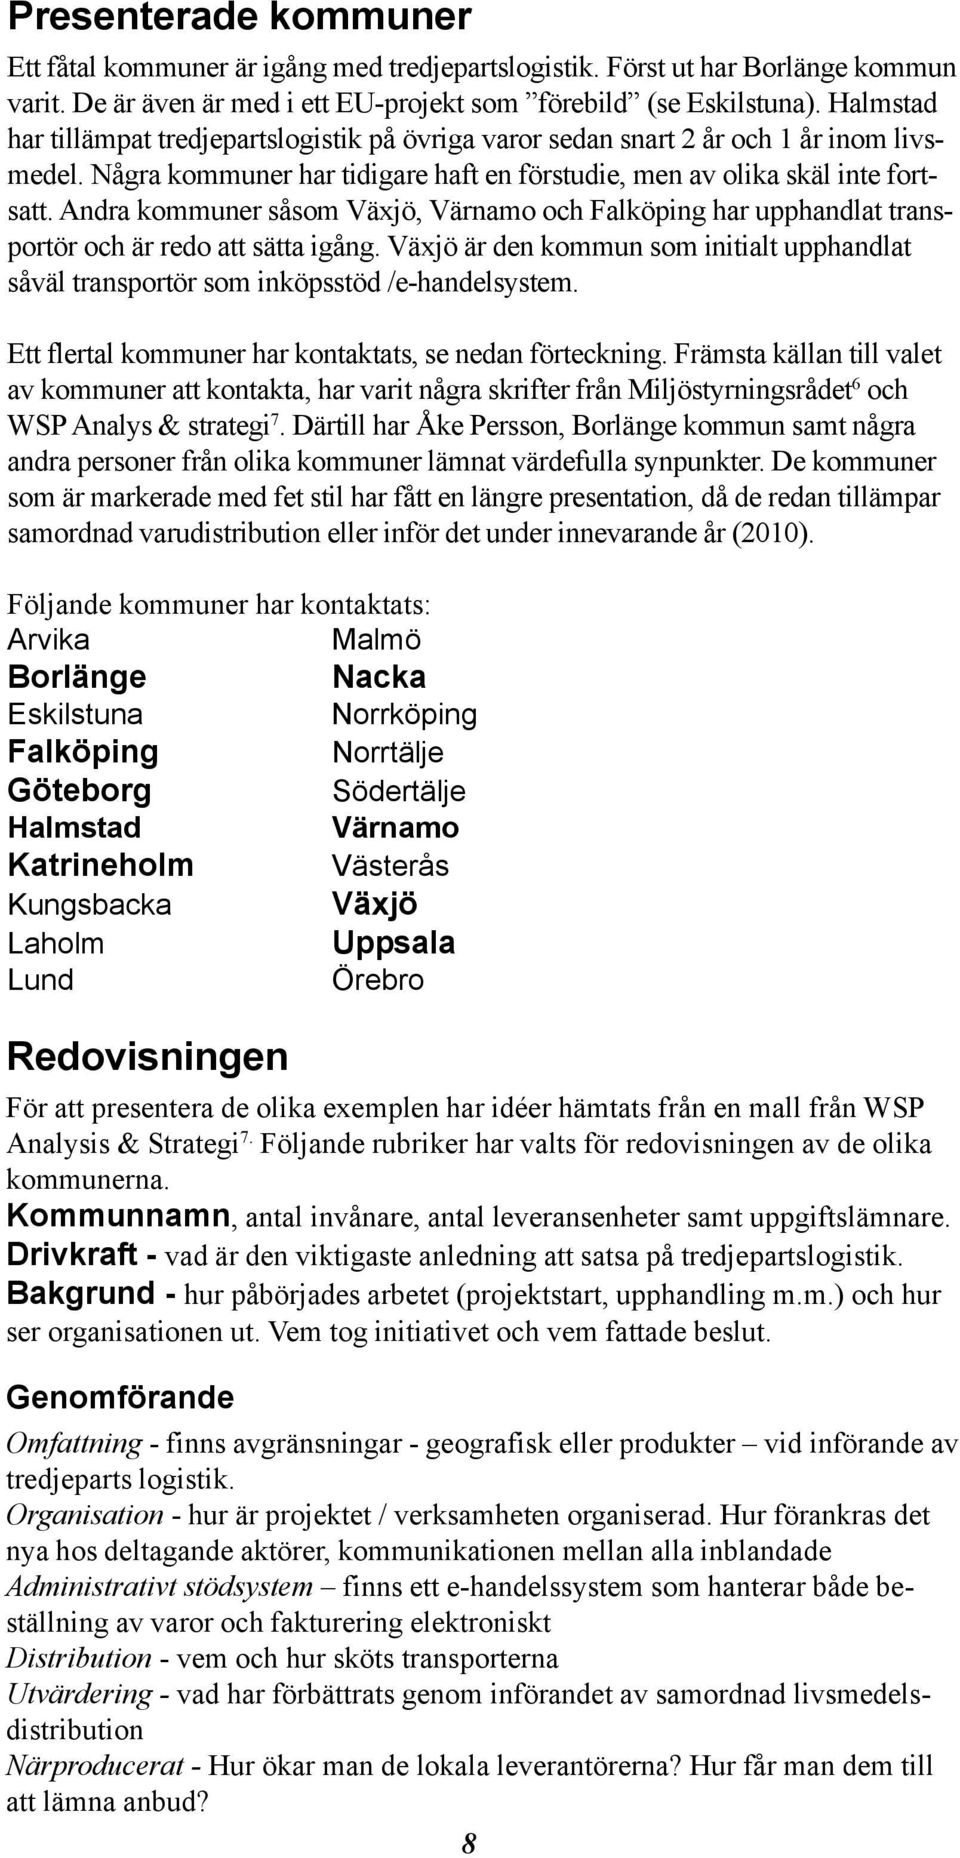 Andra kommuner såsom Växjö, Värnamo och Falköping har upphandlat transportör och är redo att sätta igång. Växjö är den kommun som initialt upphandlat såväl transportör som inköpsstöd /e-handelsystem.